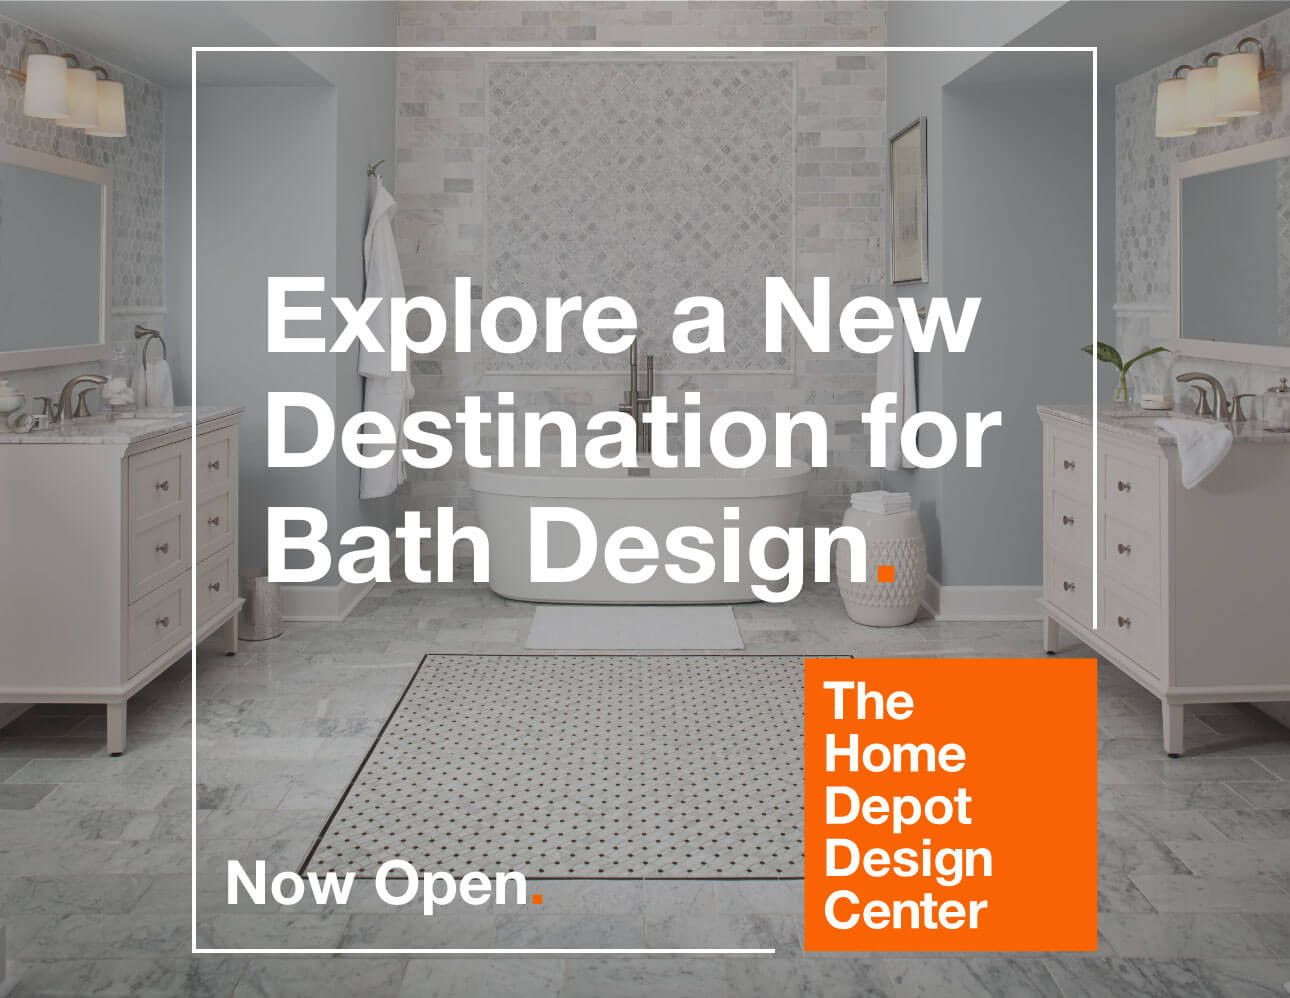 Home Depot Bathroom Design Center
 The Home Depot Design Center